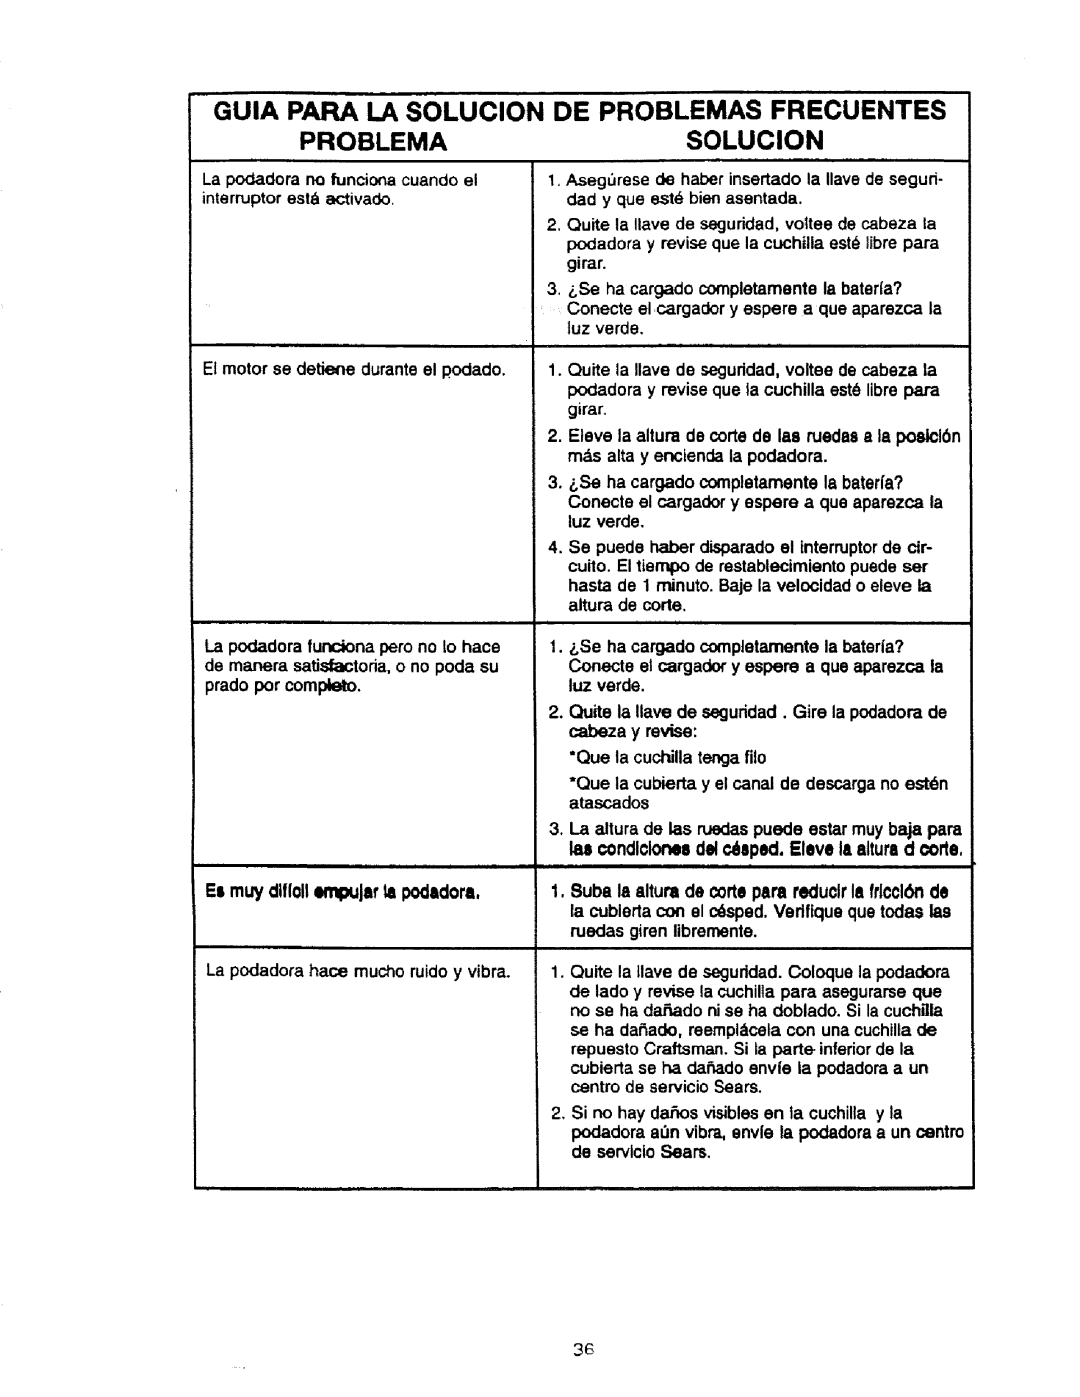 Craftsman 900.370520 manual Guia Papa La Solucion De Problemas Frecuentes, Problemasolucion 